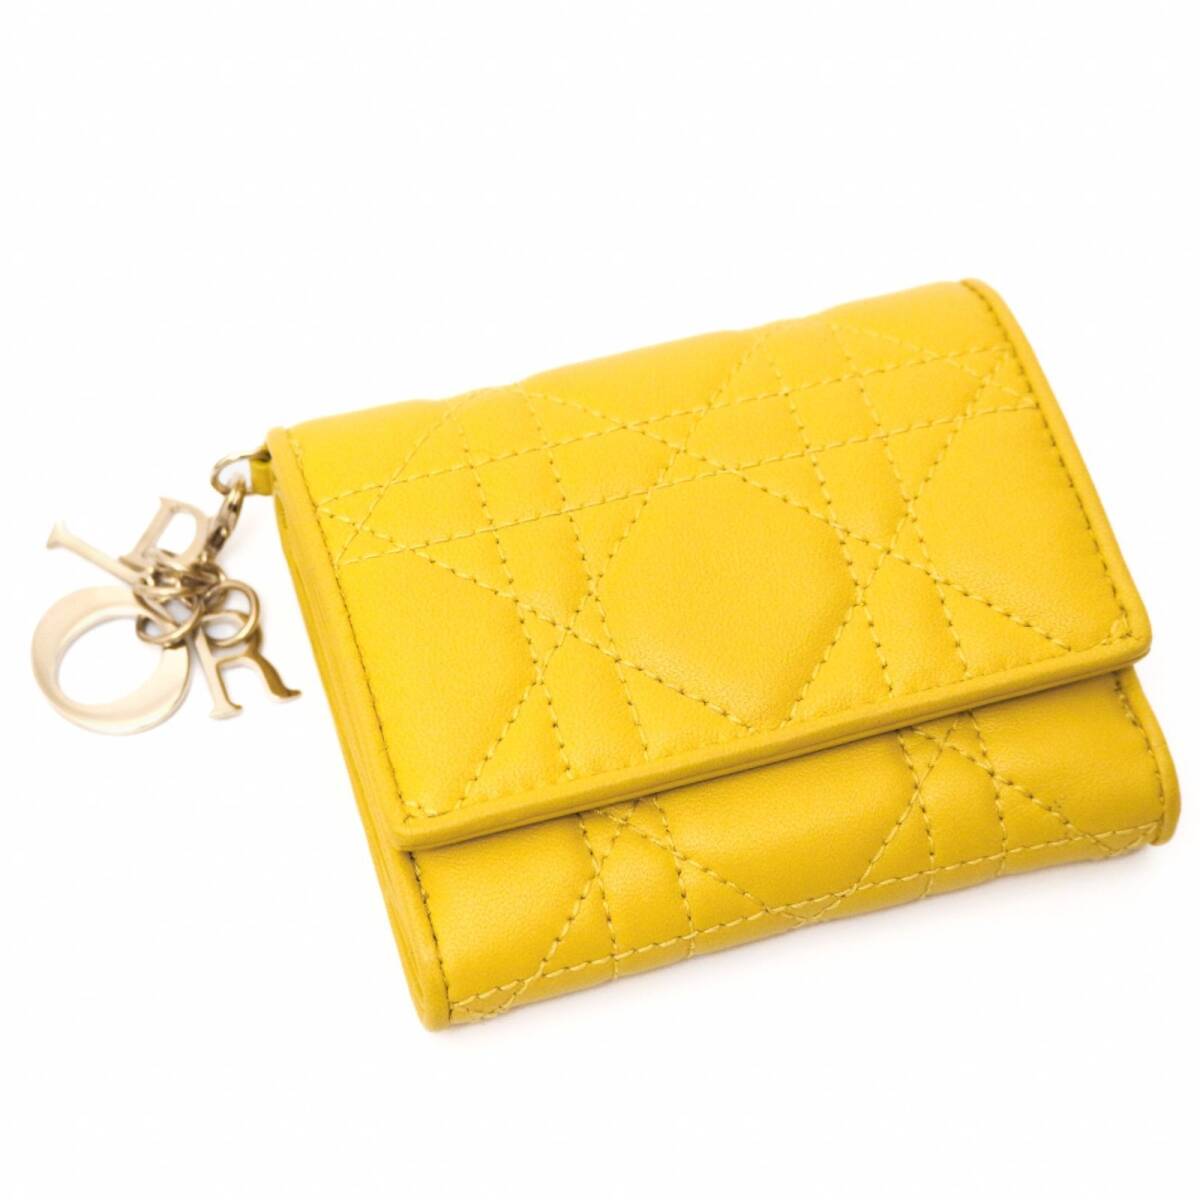 クリスチャン ディオール 41-MA-0212 カナージュ 折り財布 ウォレット folded wallet 3つ折り レザー 黄色 Yellow イエロー Christian Dior